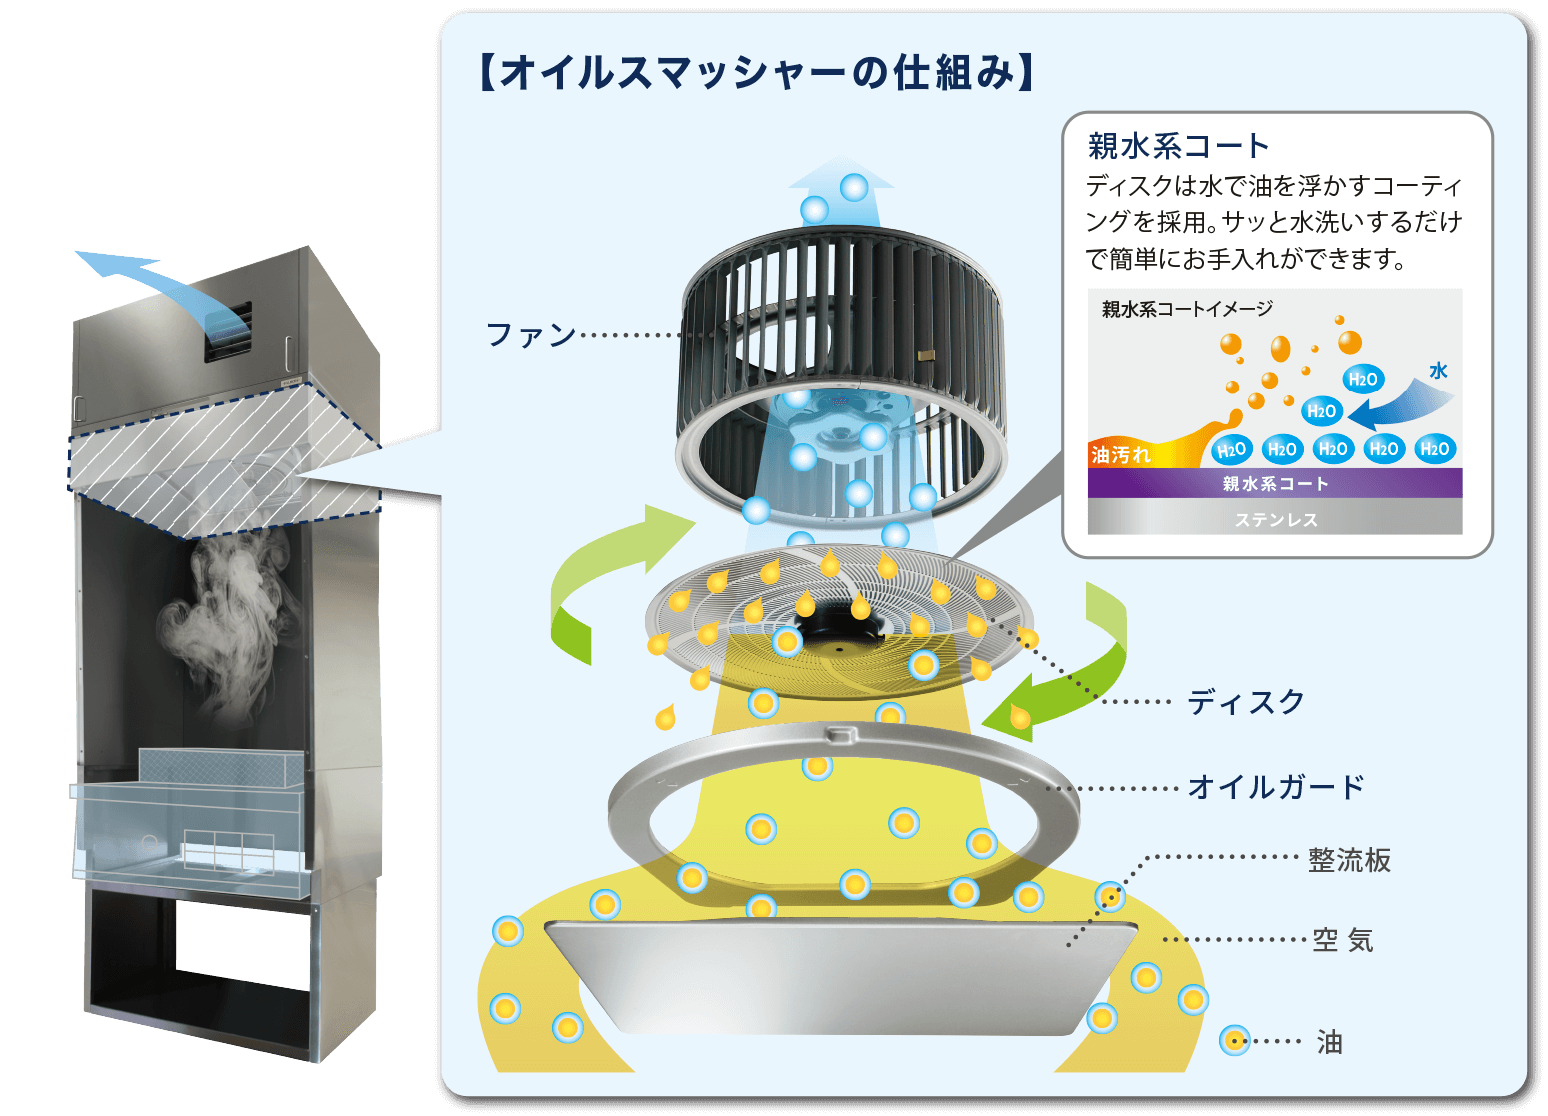 【オイルスマッシャーの仕組みの図】 親水系コート：ディスクは水で油を浮かすコーティングを採用。サッと水洗いするだけで簡単にお手入れができます。